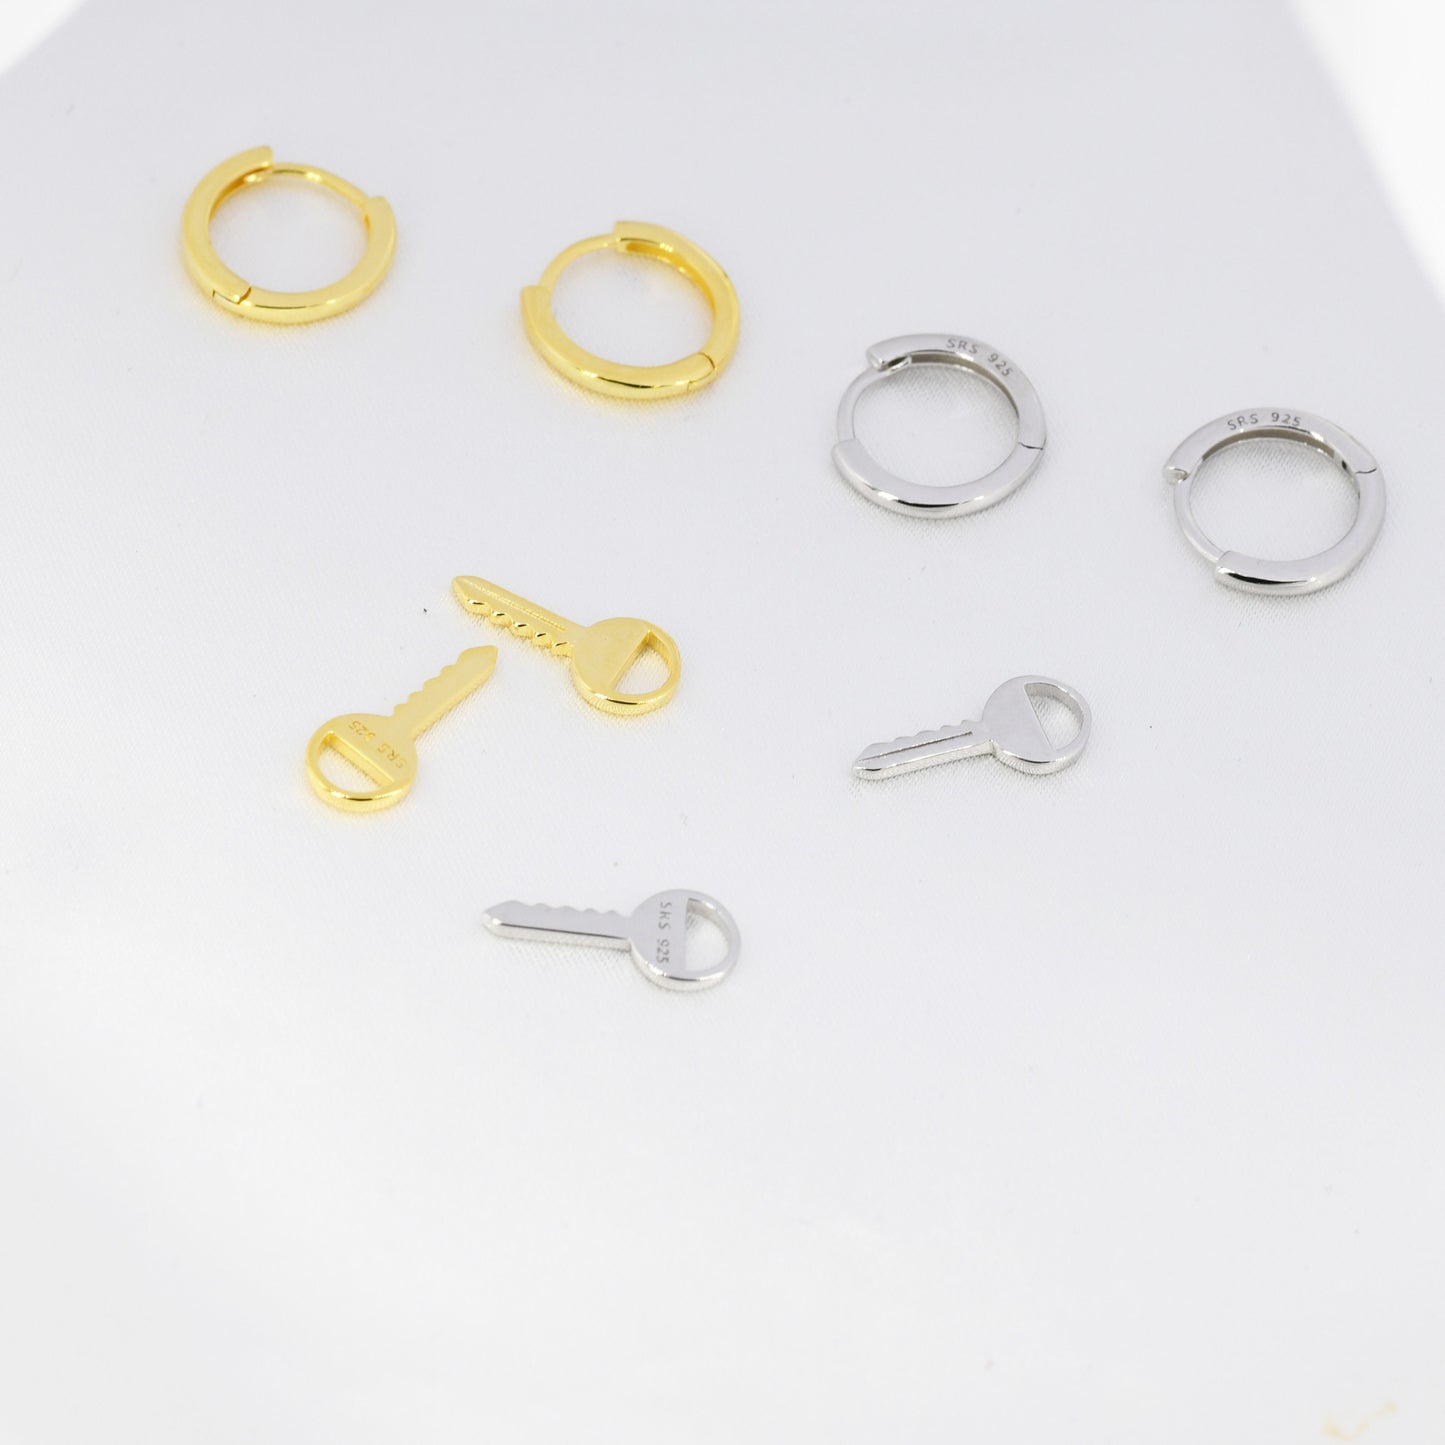 Dangling Key Hoop Earrings in Sterling Silver, Detachable Lock Charm Dangle Hoop Earrings, Silver or Gold,  Interchangeable